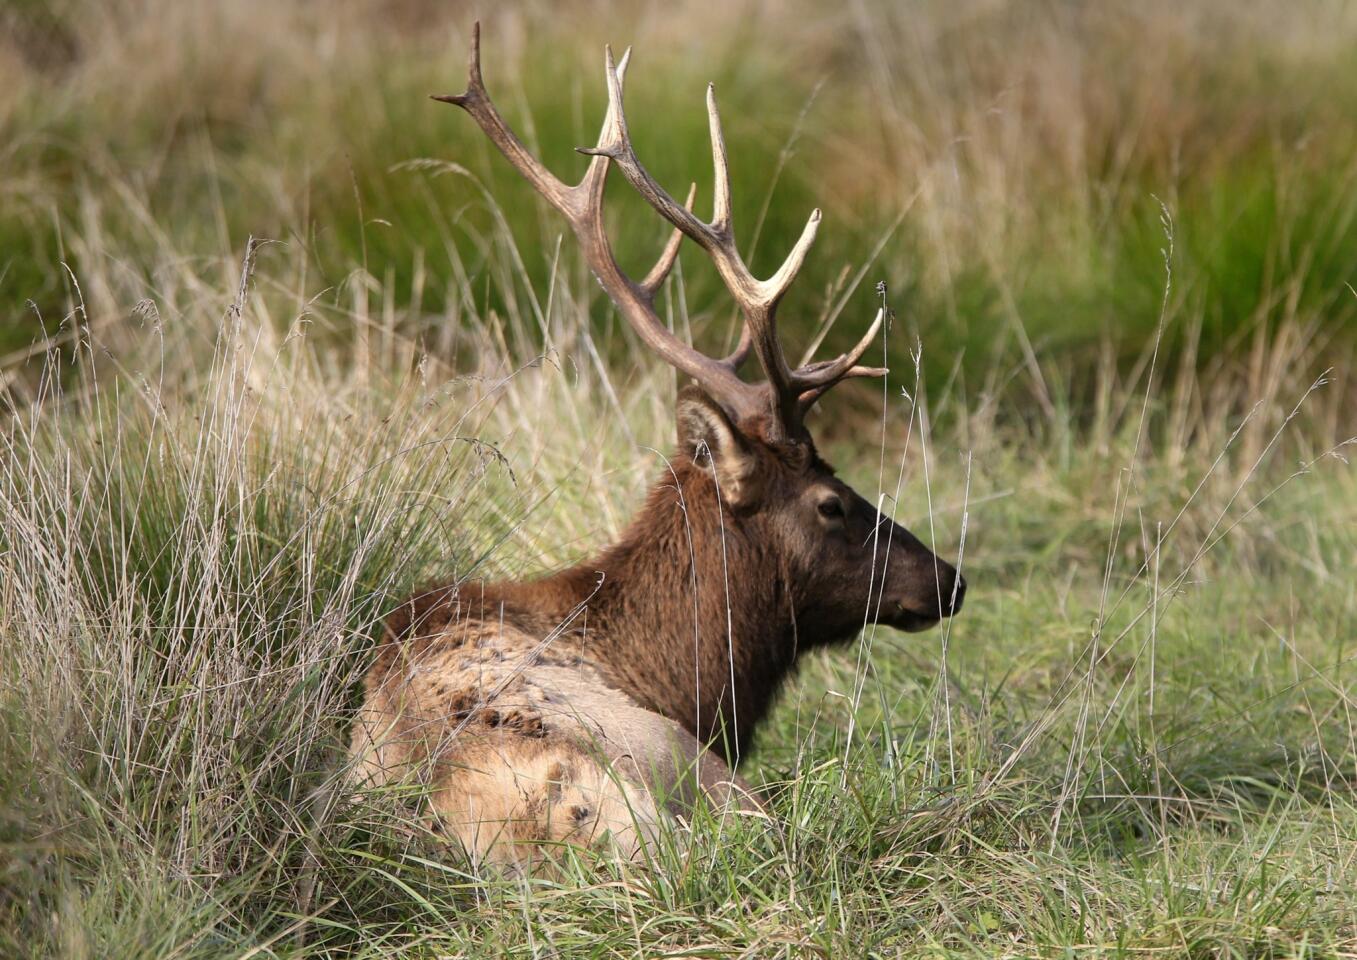 Giant Roosevelt elk